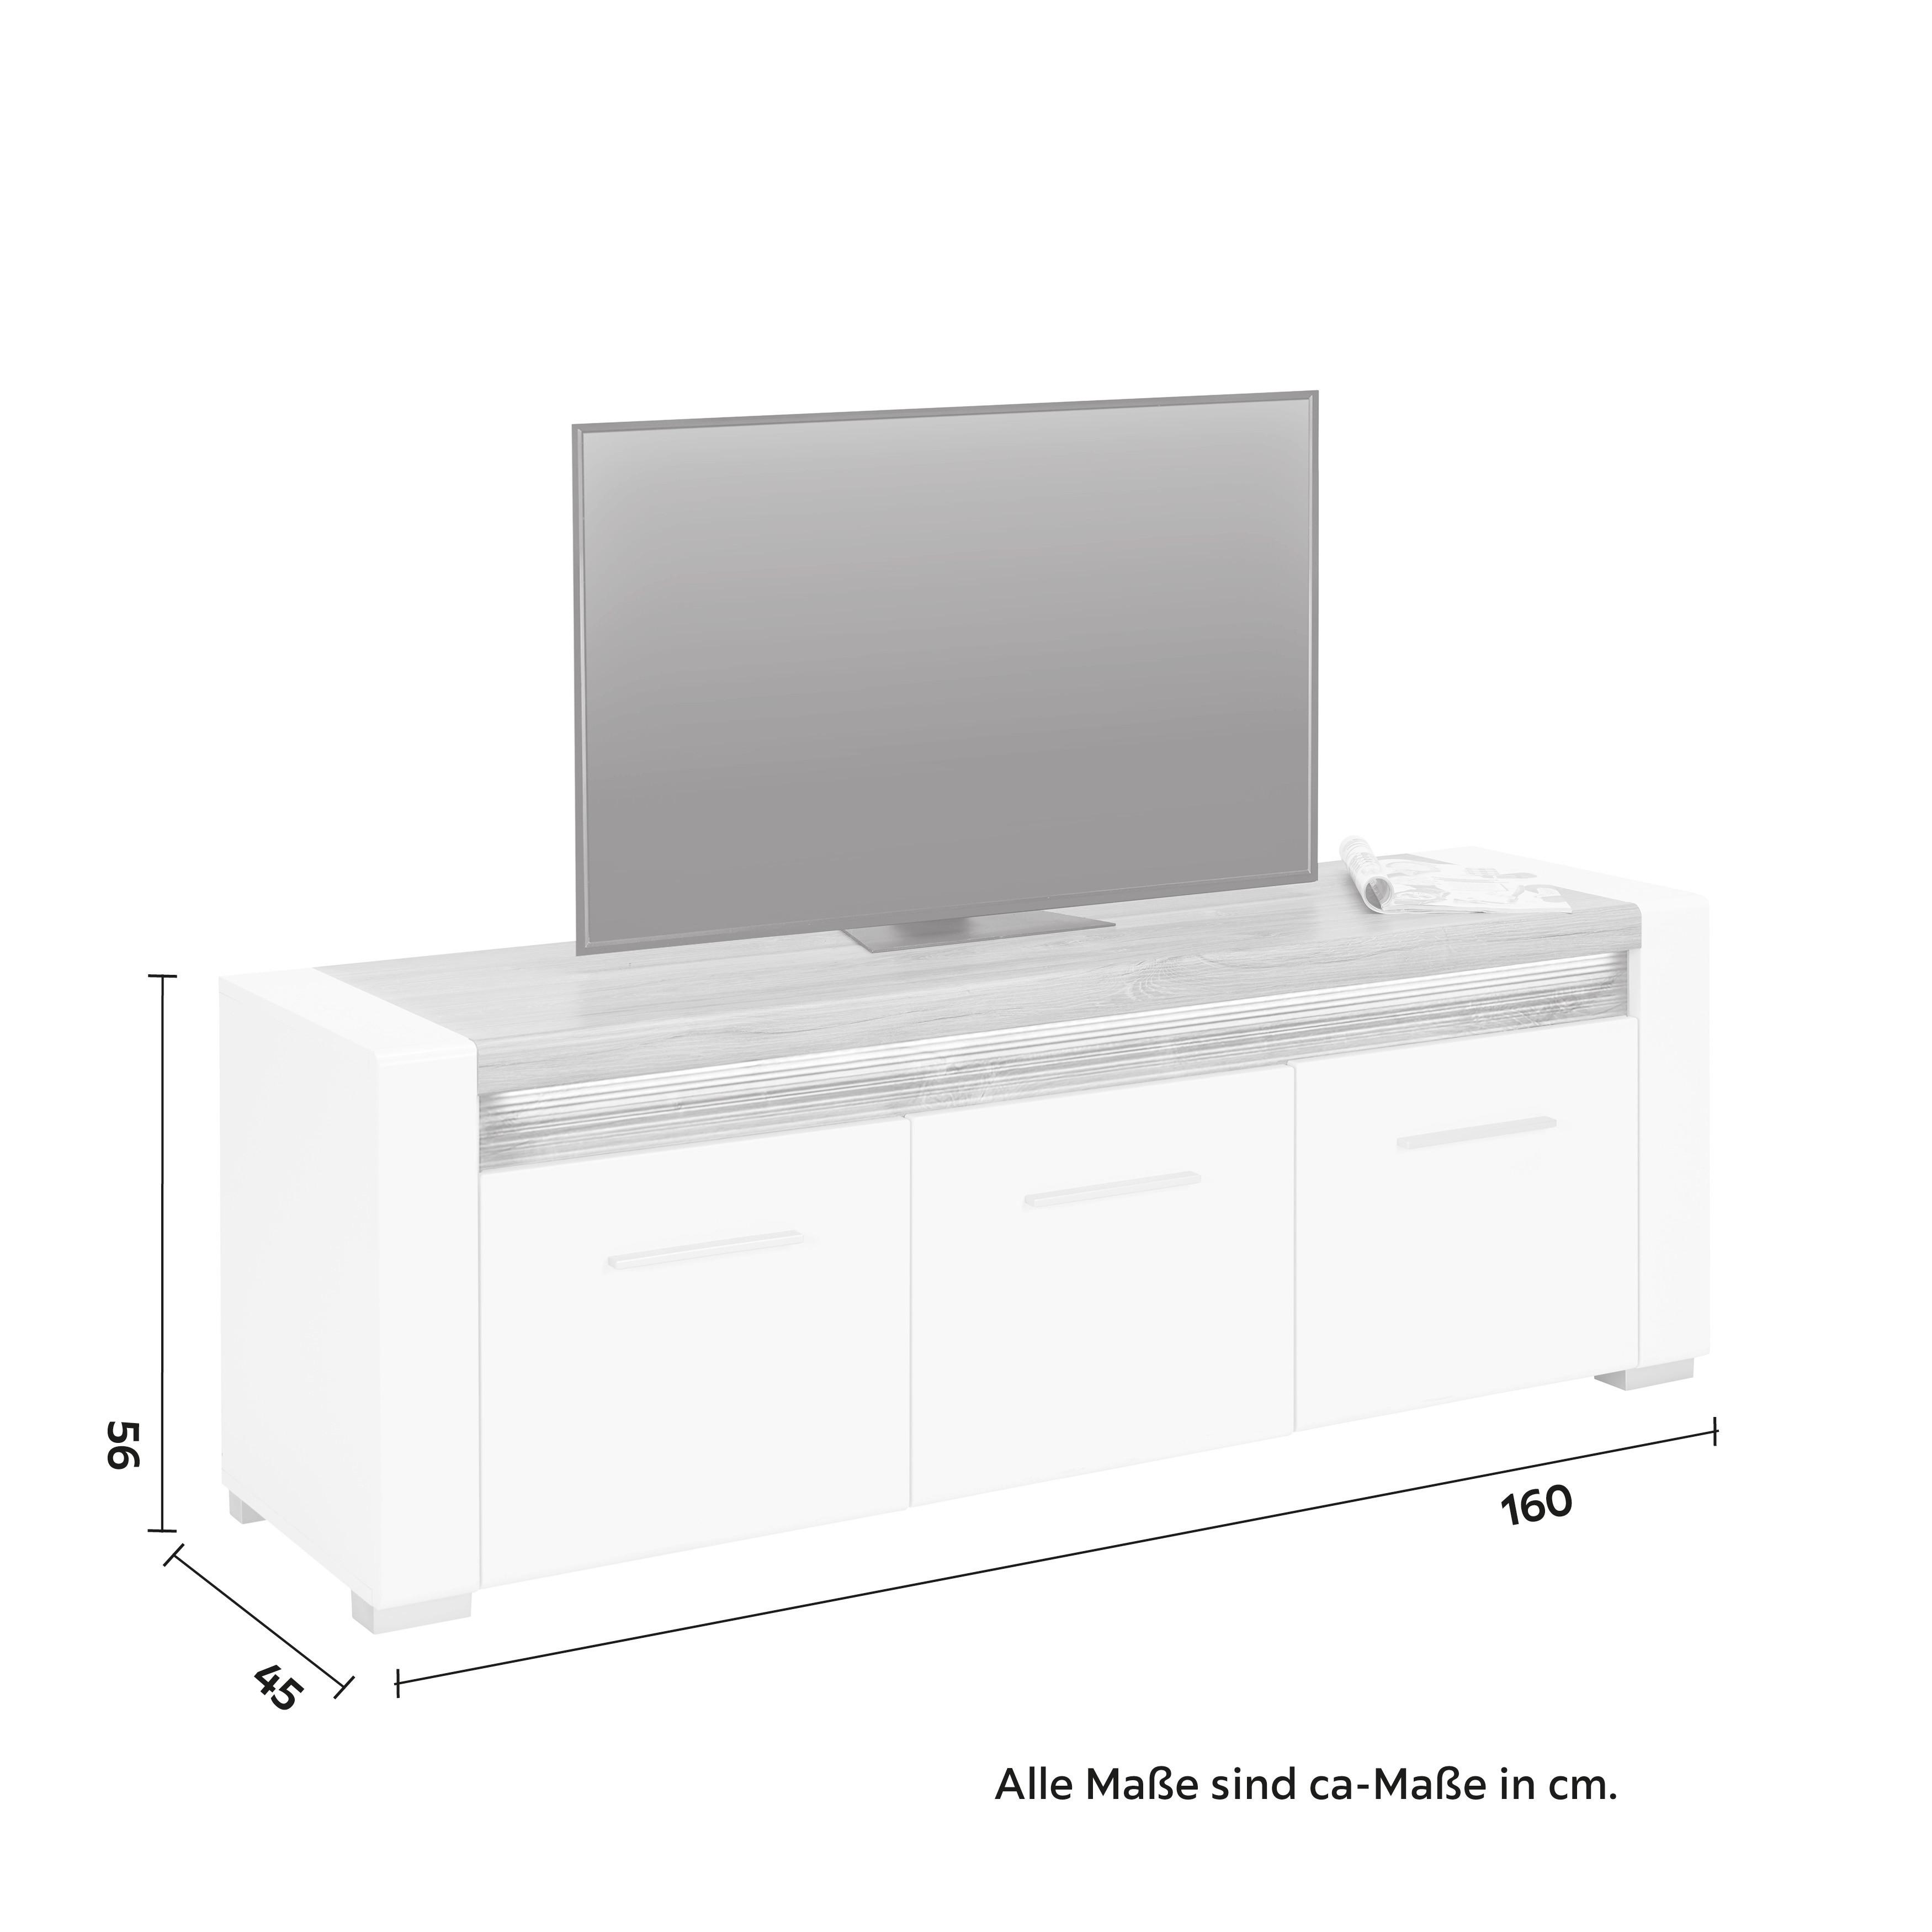 TV-Element in Weiss Hochglanz - Chromfarben/Weiss, Modern, Holzwerkstoff/Kunststoff (160/56/45cm) - Modern Living